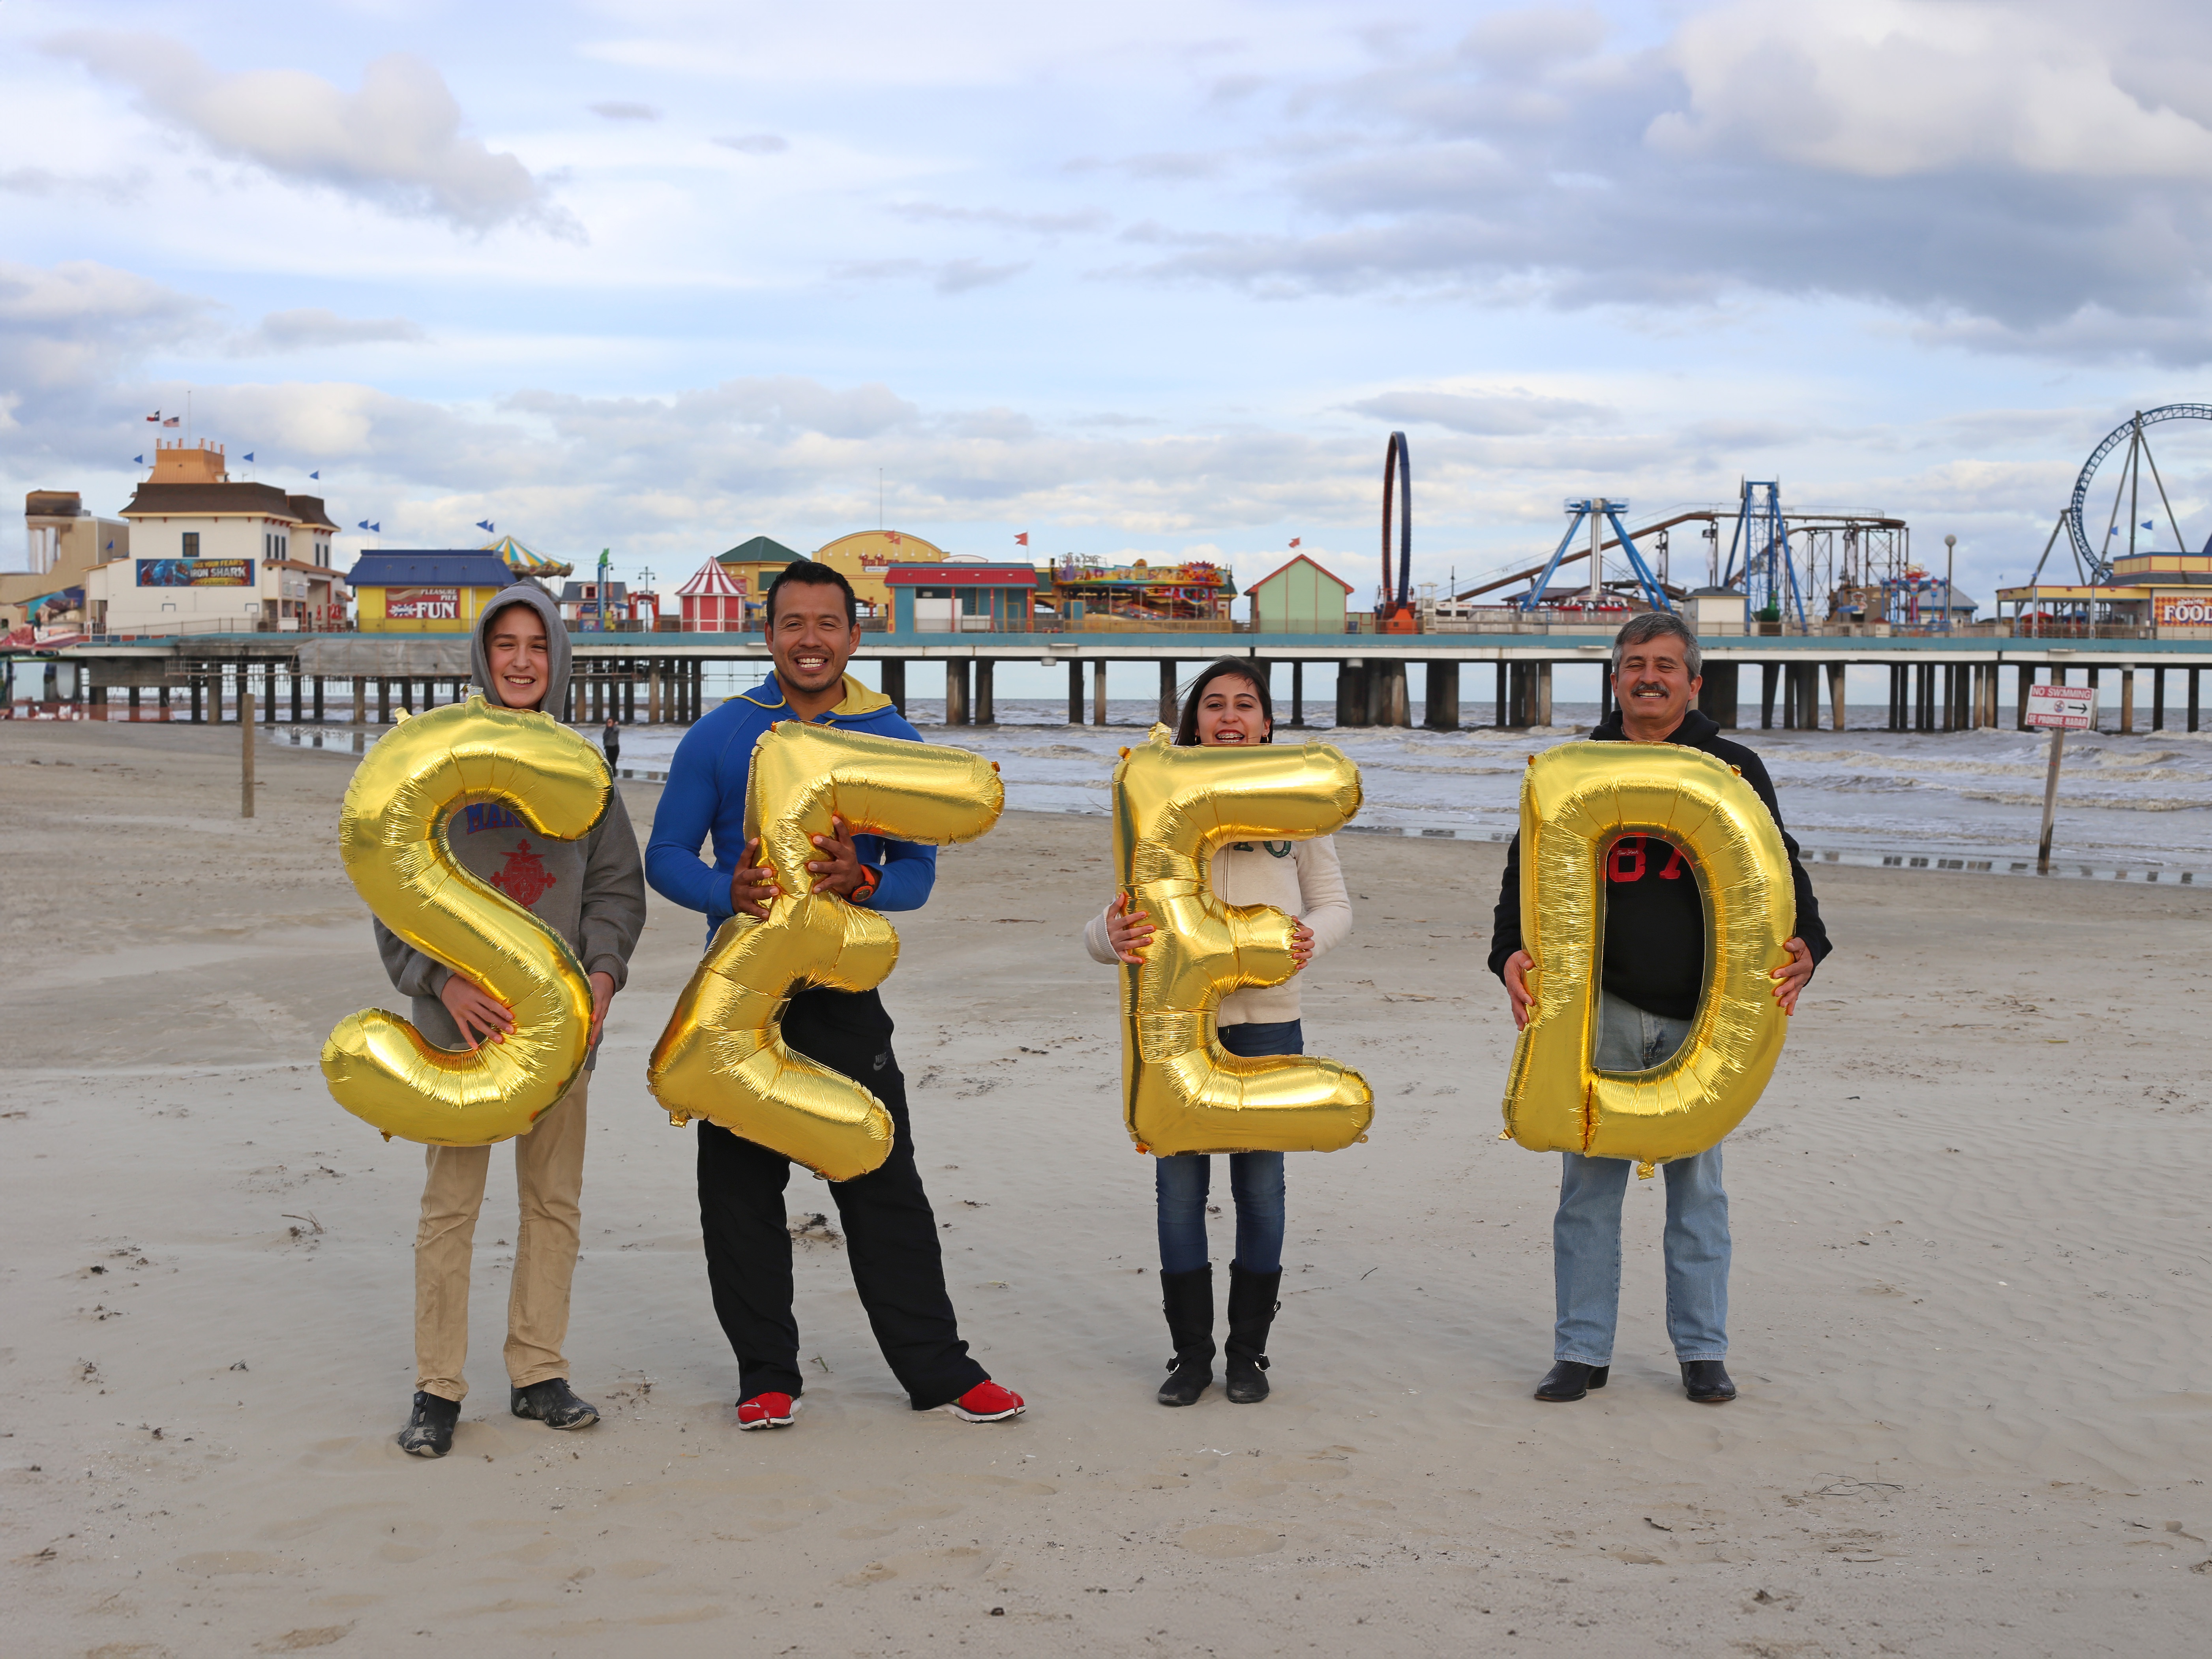 US, Galveston, Galveston Island Historic Pleasure Pier - Seed, Silence was Golden, gold balloons